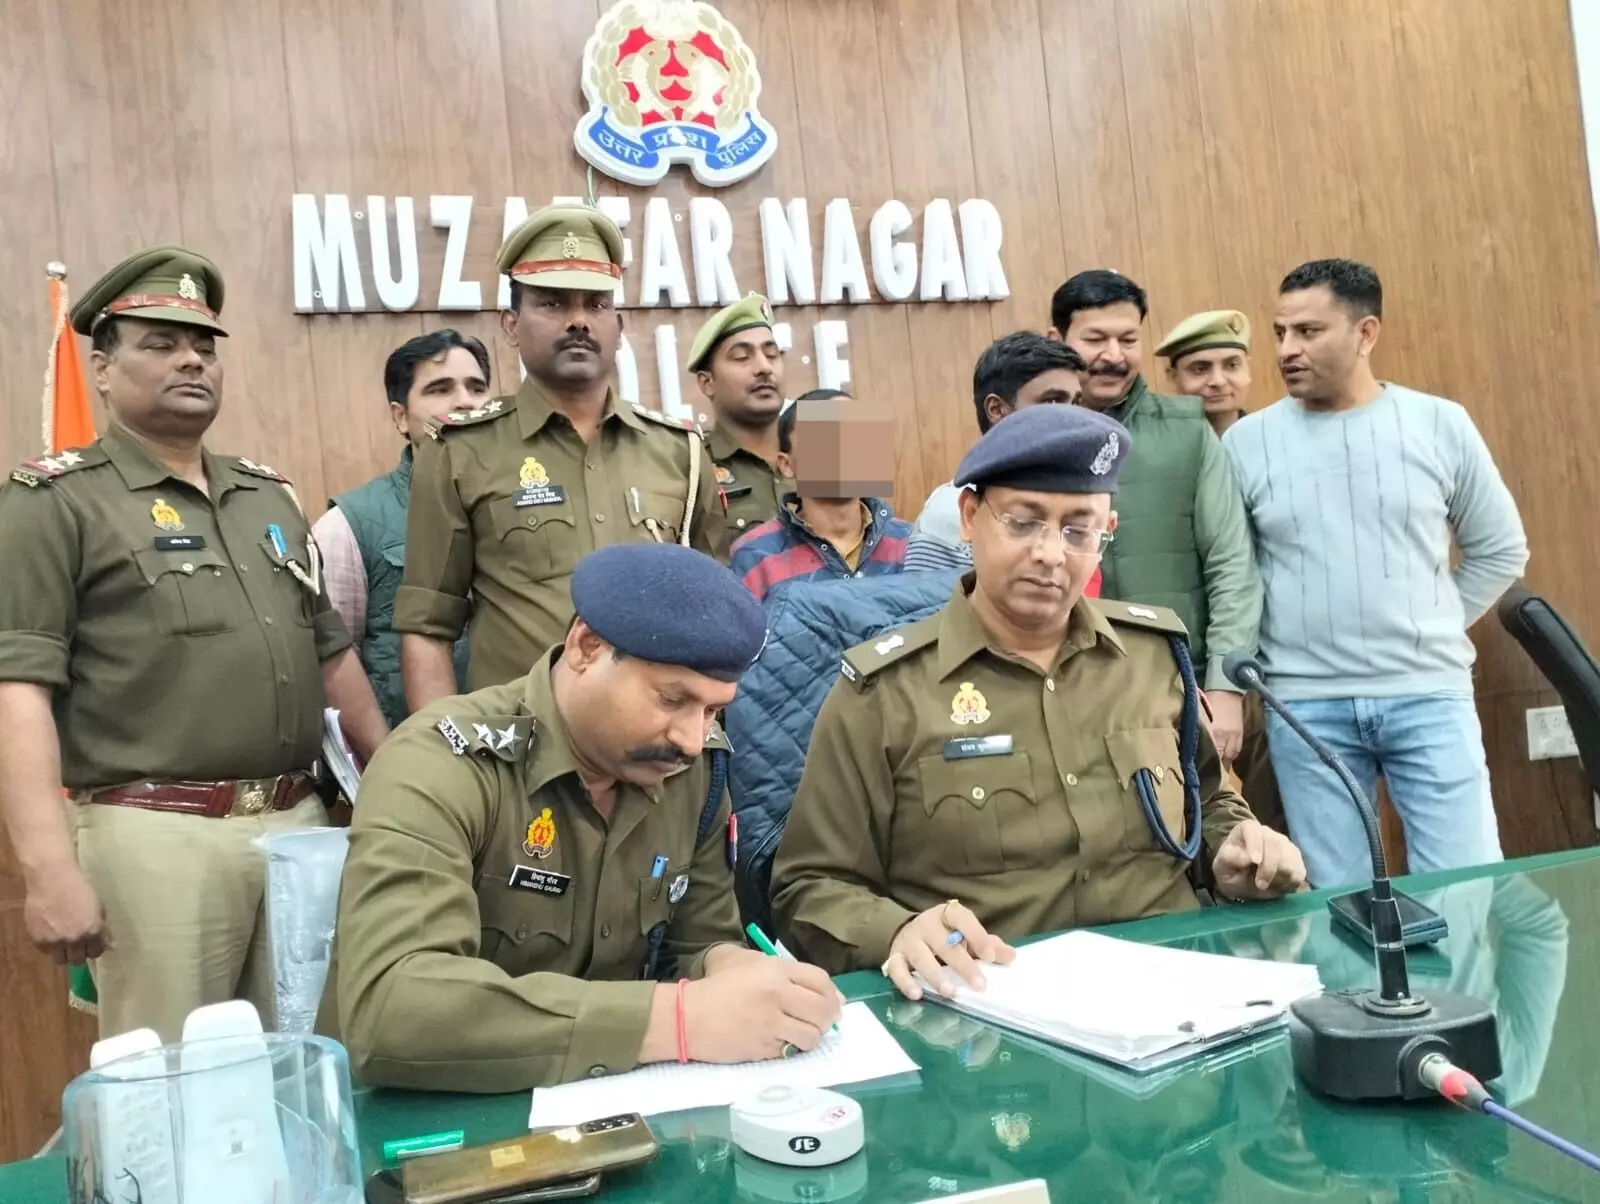 मुजफ्फरनगर पुलिस ने ठेके से शराब चोरी का किया खुलासा, 2 अभियुक्तगण गिरफ्तार, 2.5 लाख रु. कीमत की 30 पेटी अंग्रेजी शराब बरामद